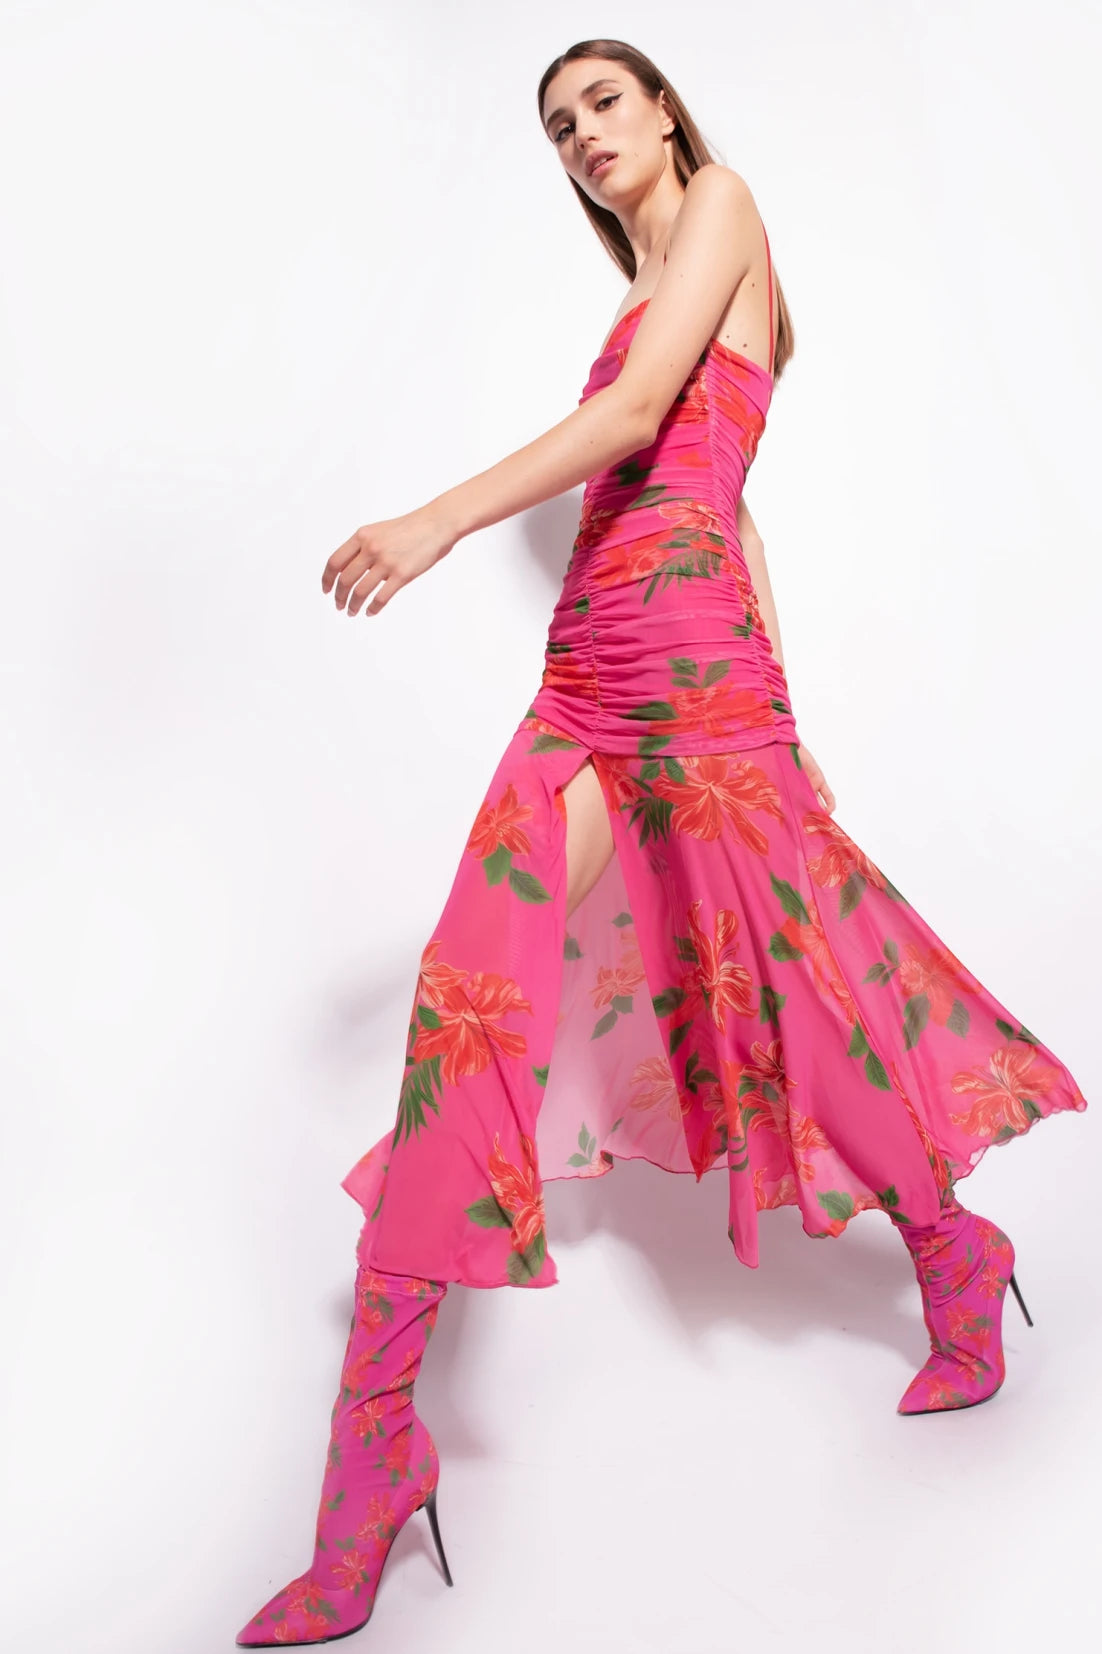 Abrozato slim-fit floral-print dress by Pinko